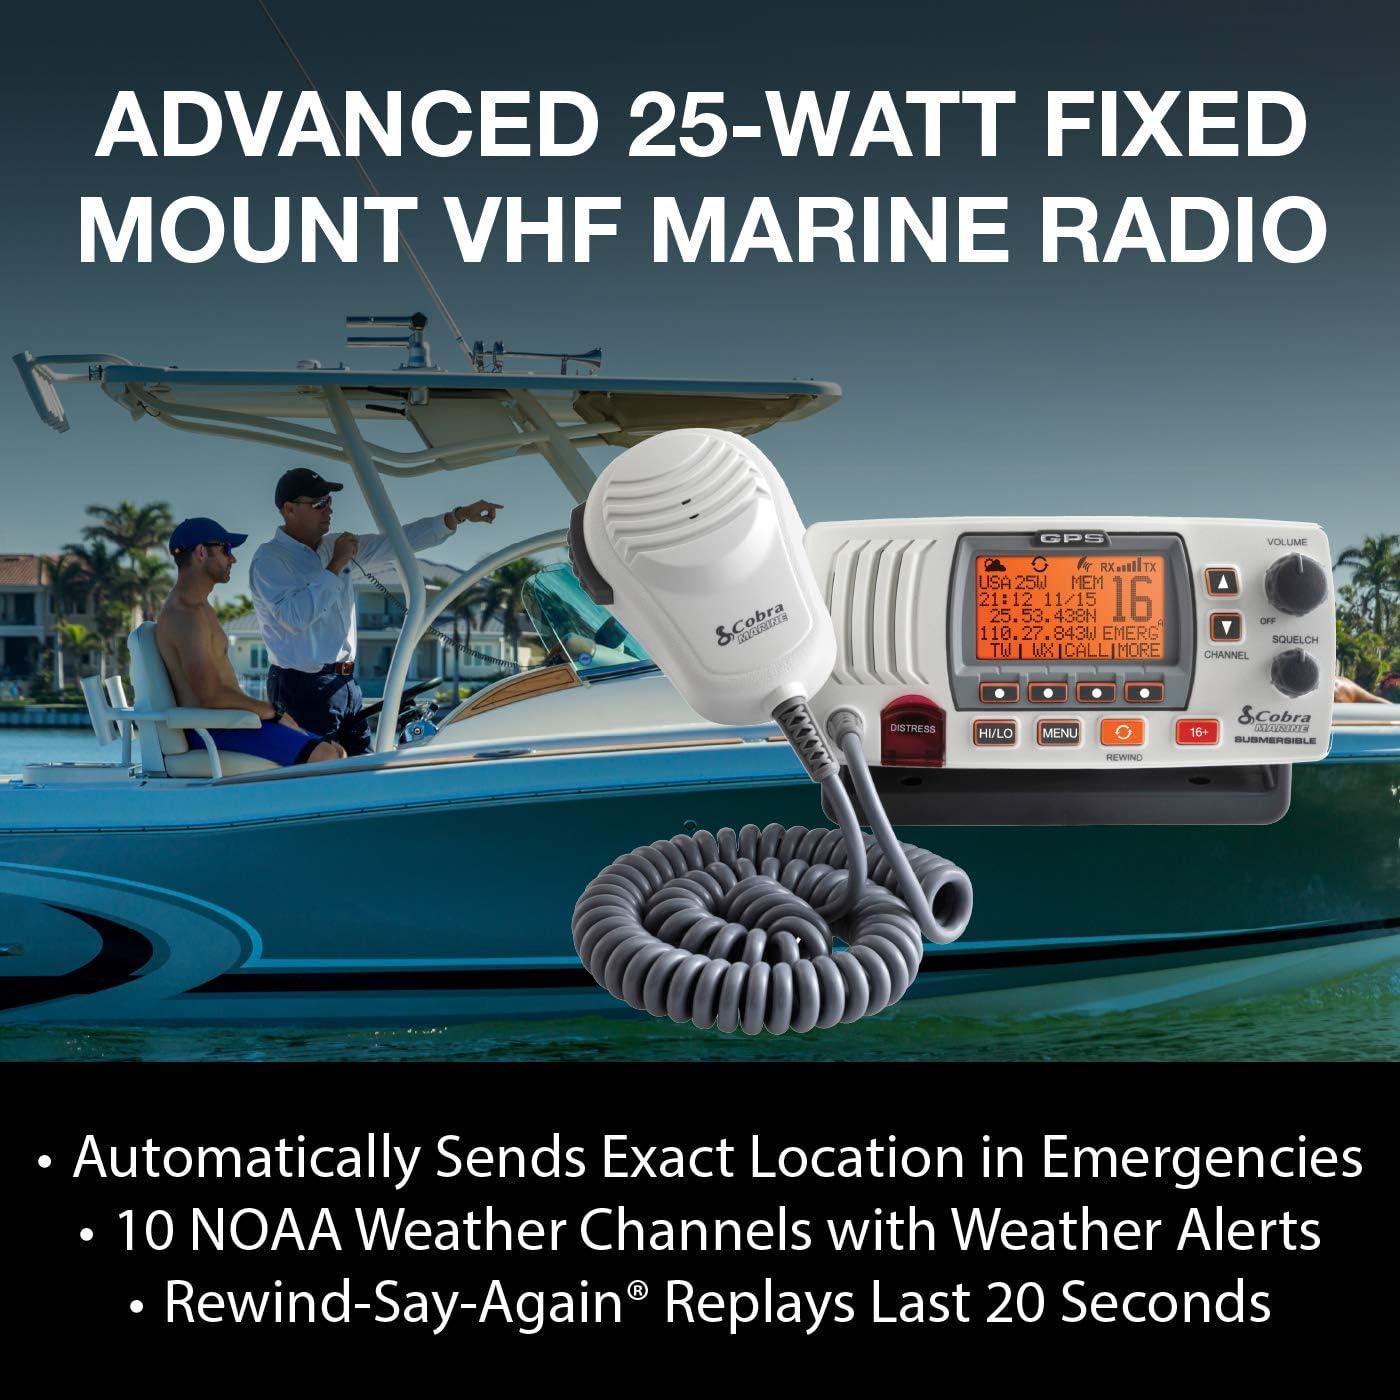 Cobra MRF77WGPS 25 Watt Fixed Mount VHF Marine Radio 